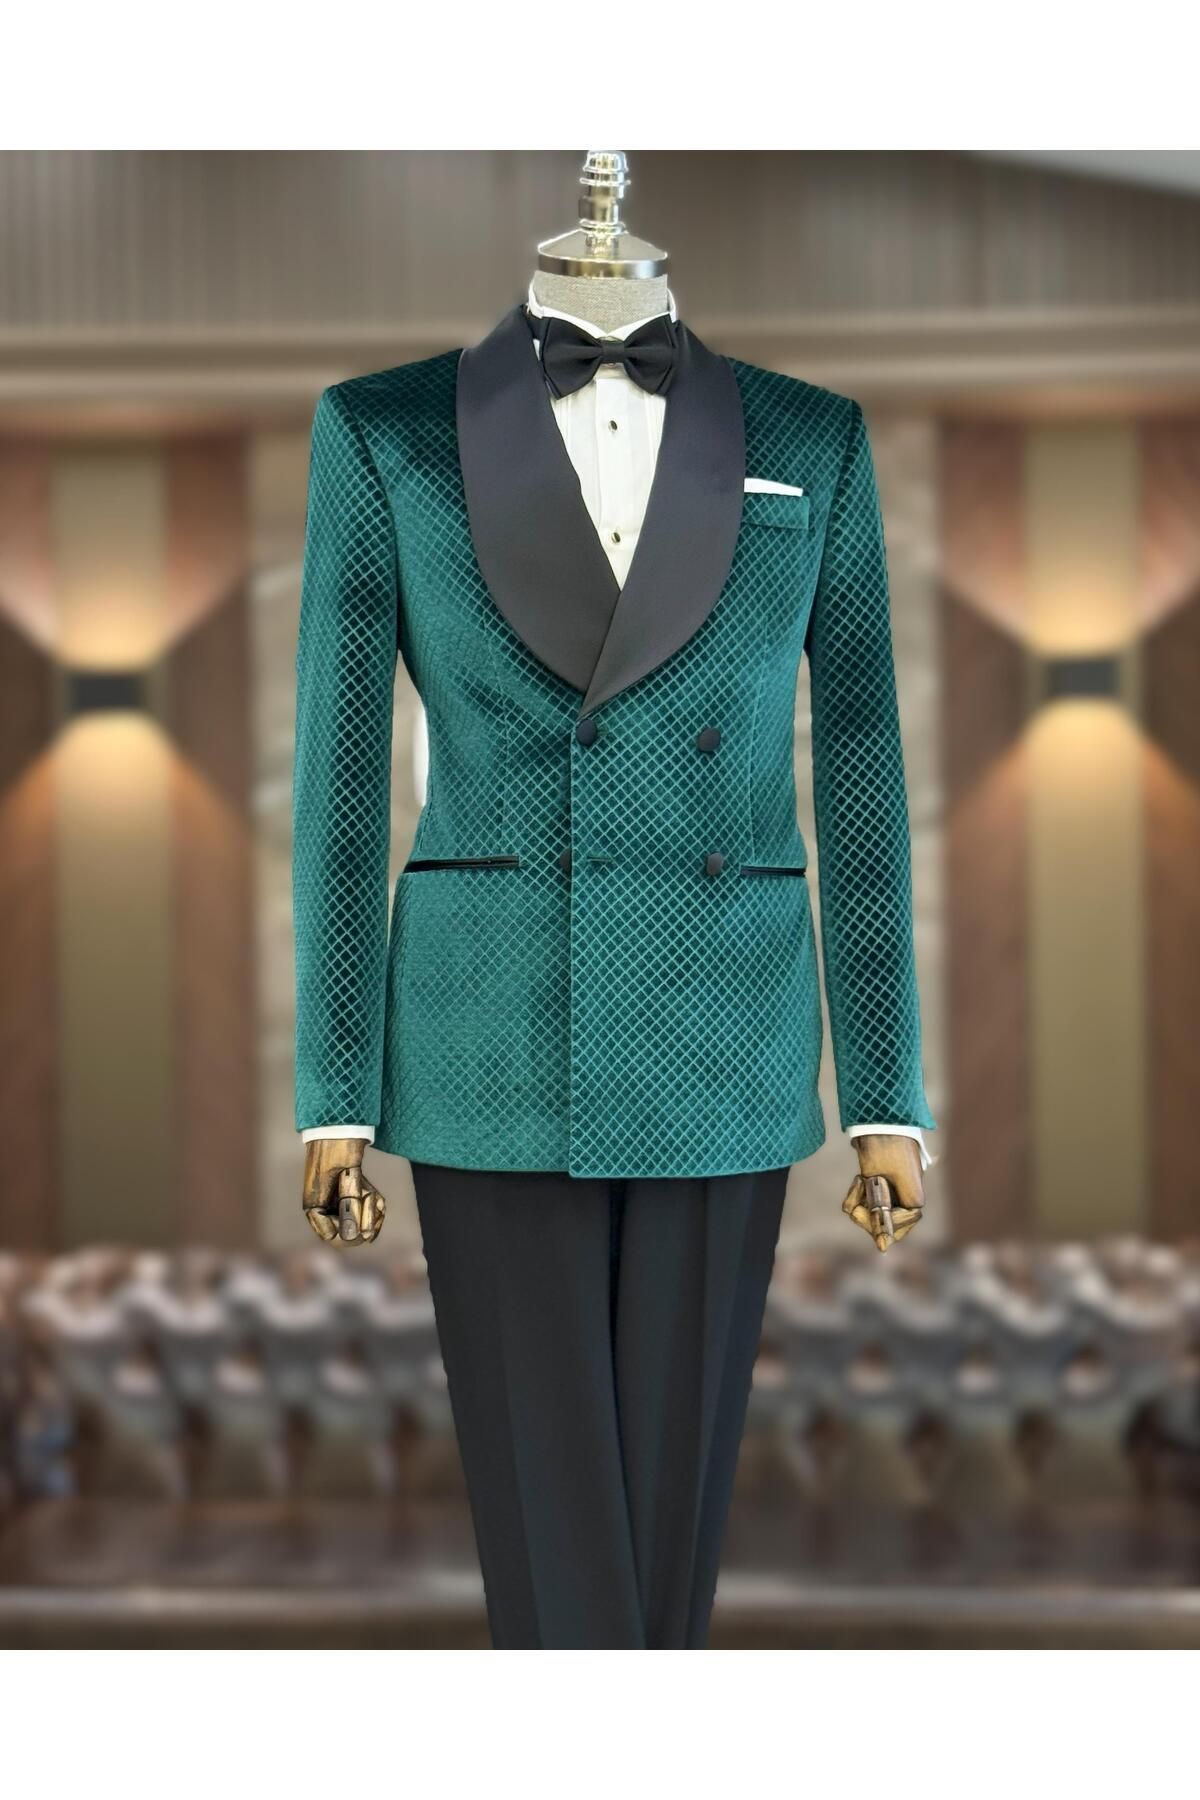 TerziAdemAltun İtalyan stil slim fit şal yaka kadife kruvaze ceket pantolon damatlık set yeşil T11789